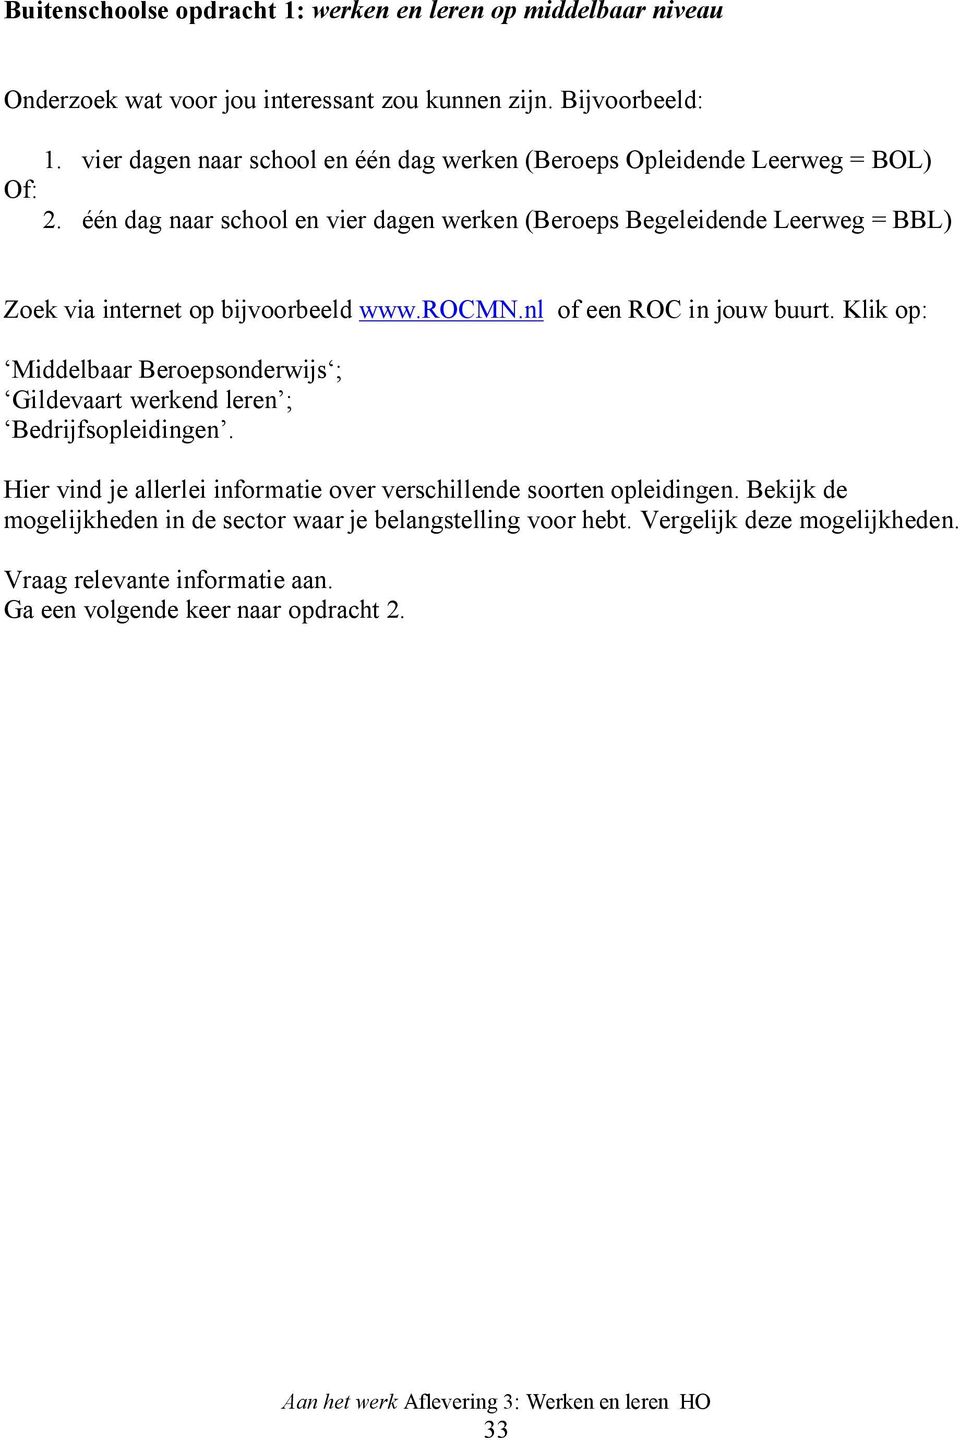 één dag naar school en vier dagen werken (Beroeps Begeleidende Leerweg = BBL) Zoek via internet op bijvoorbeeld www.rocmn.nl of een ROC in jouw buurt.